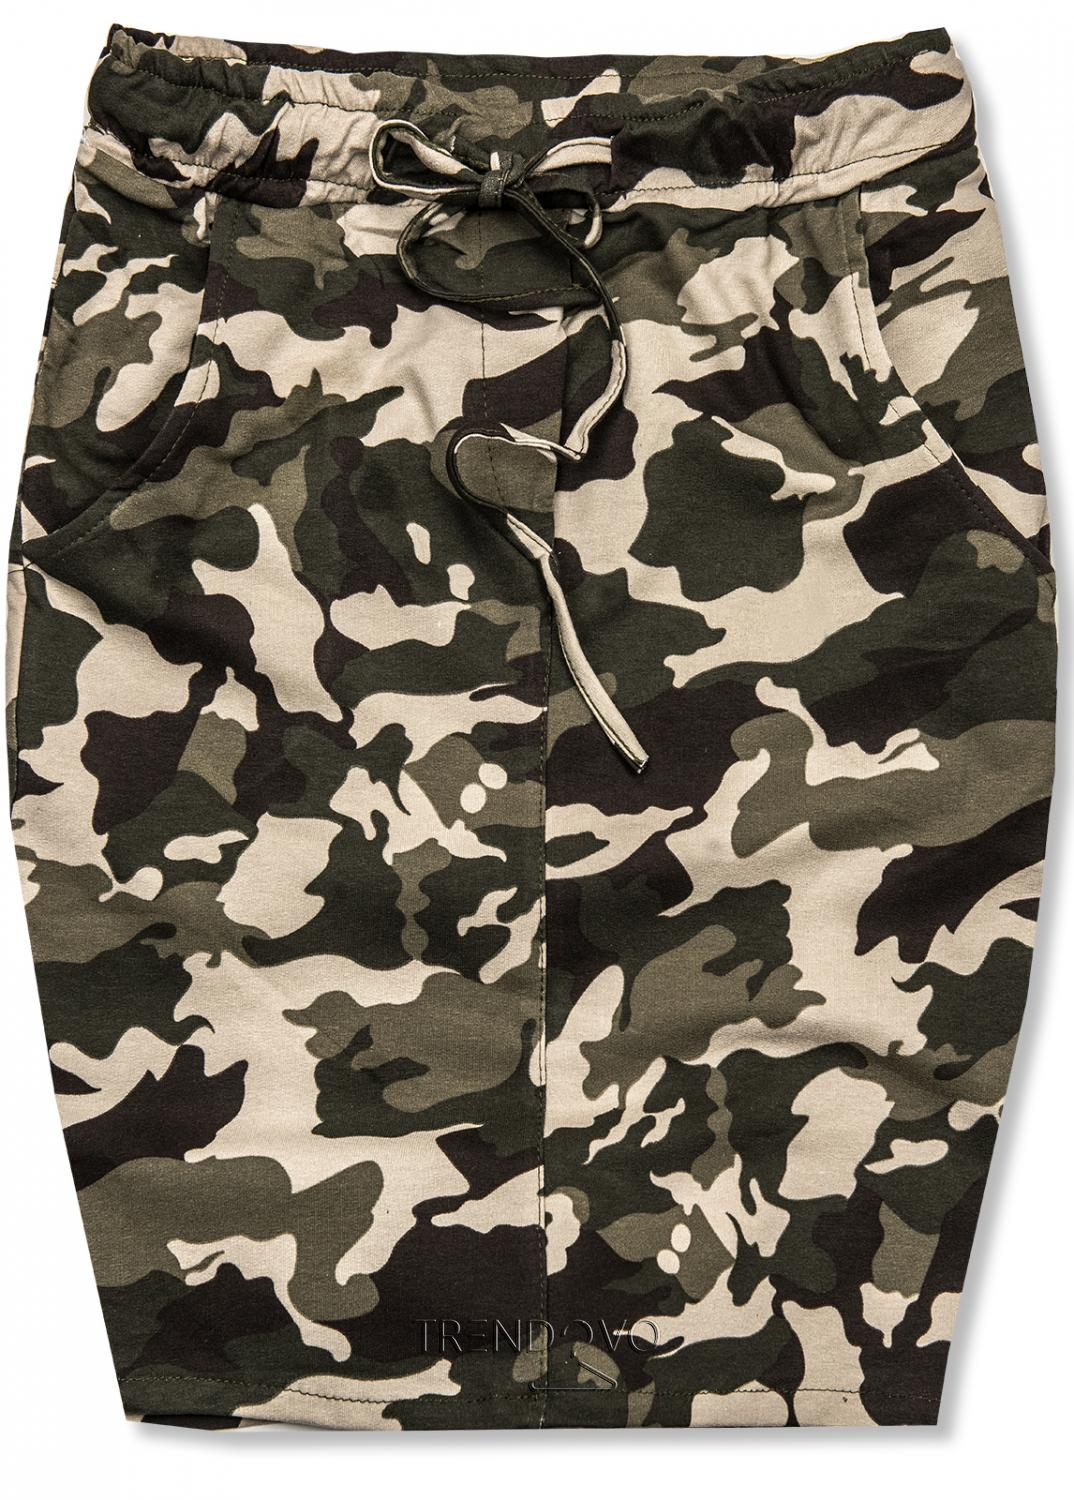 Khaki-béžová army bavlnená sukňa